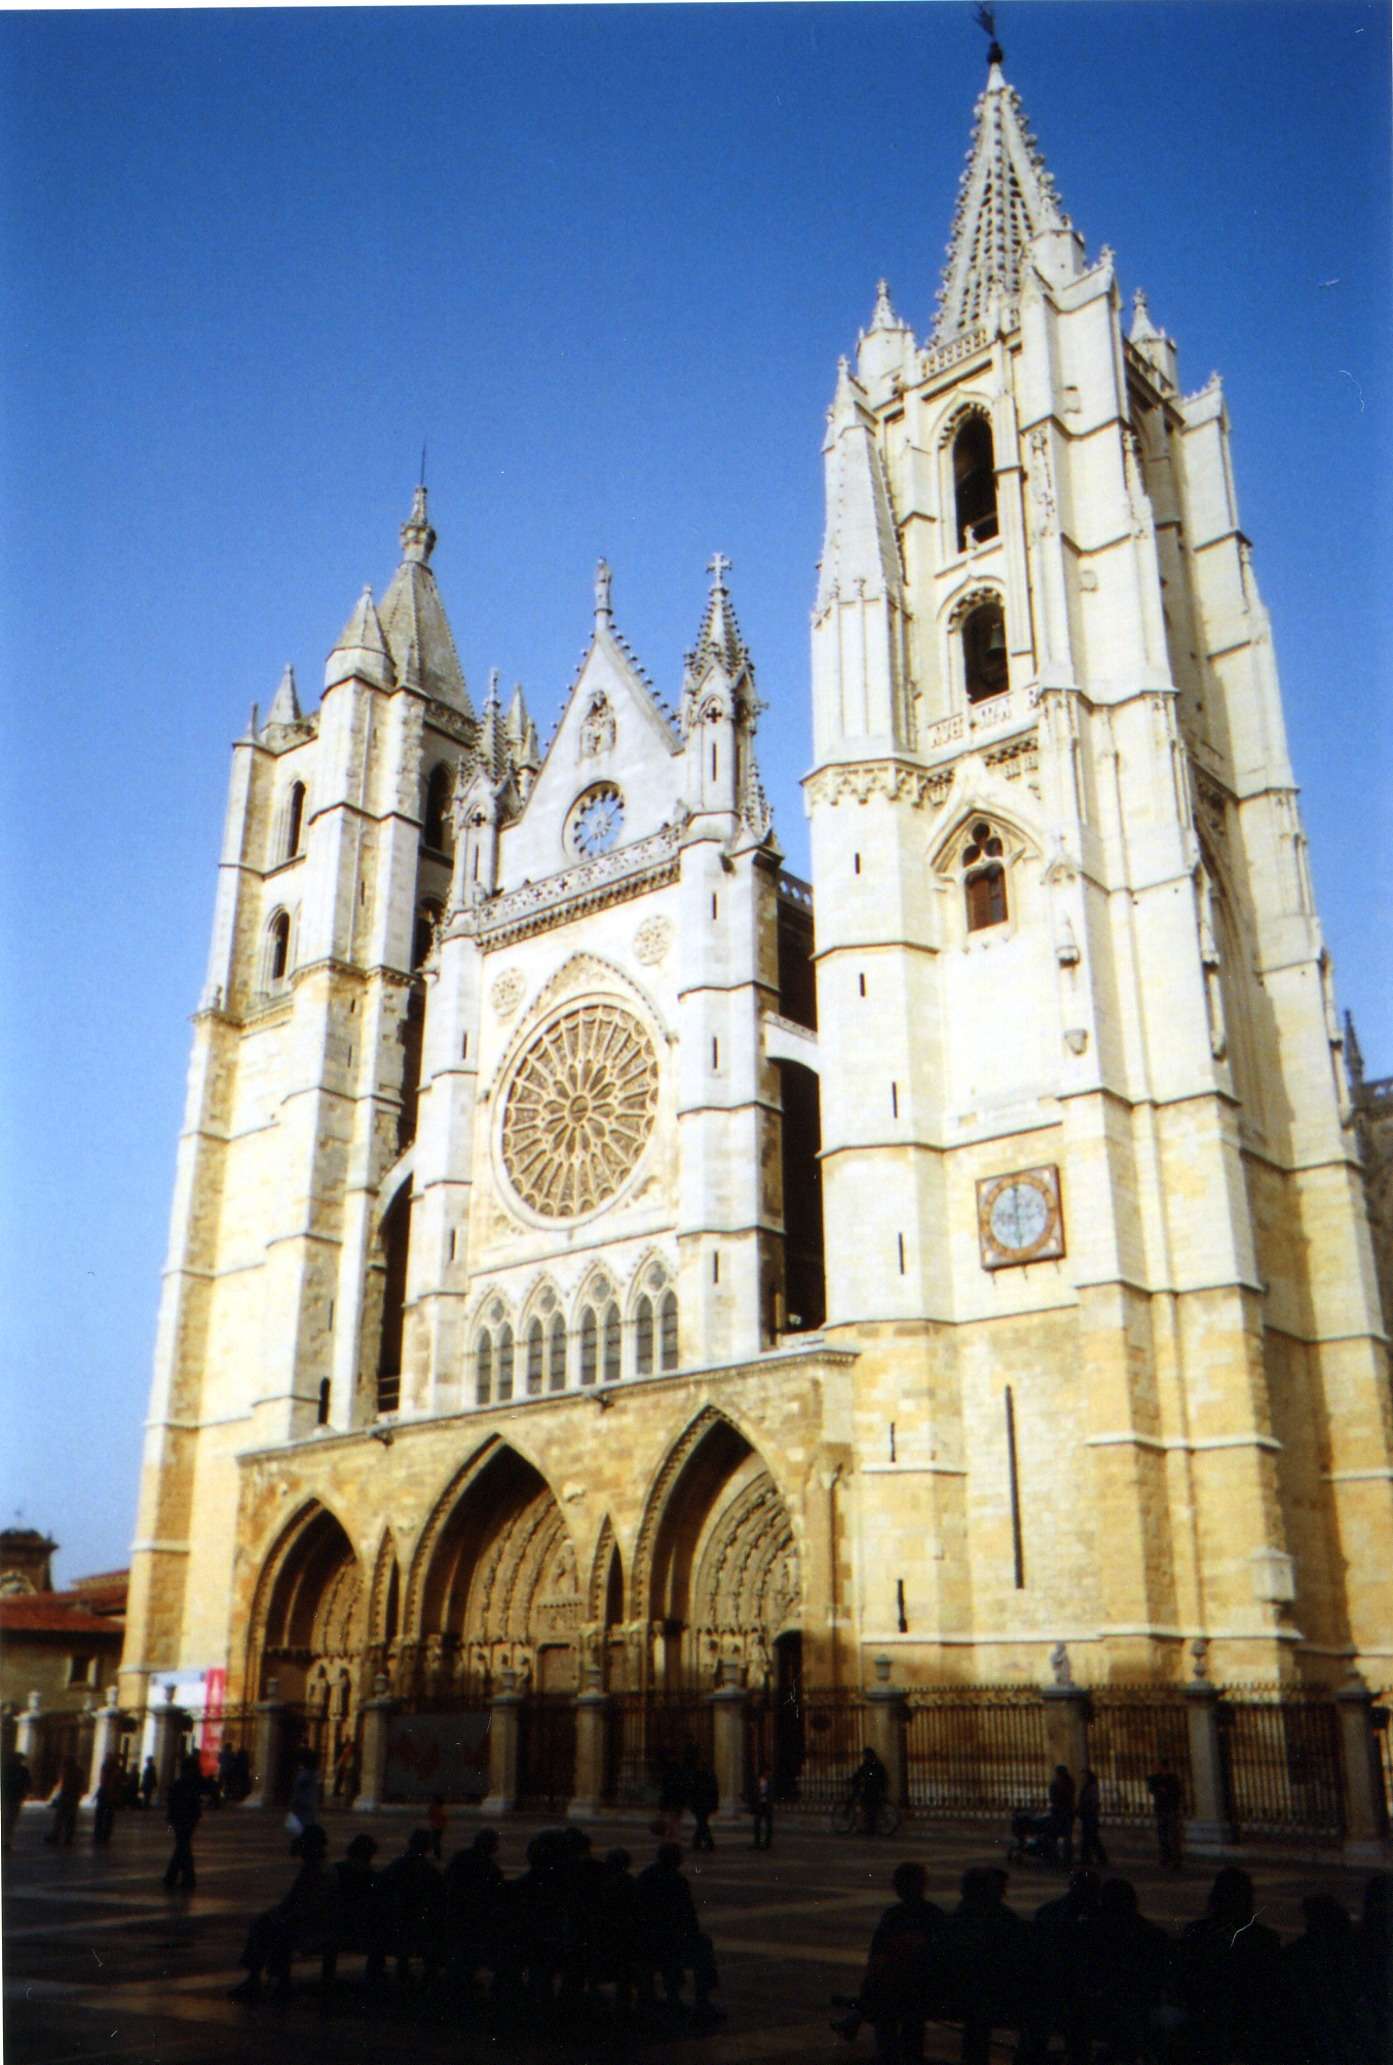 León - Excursiones desde Madrid (1)